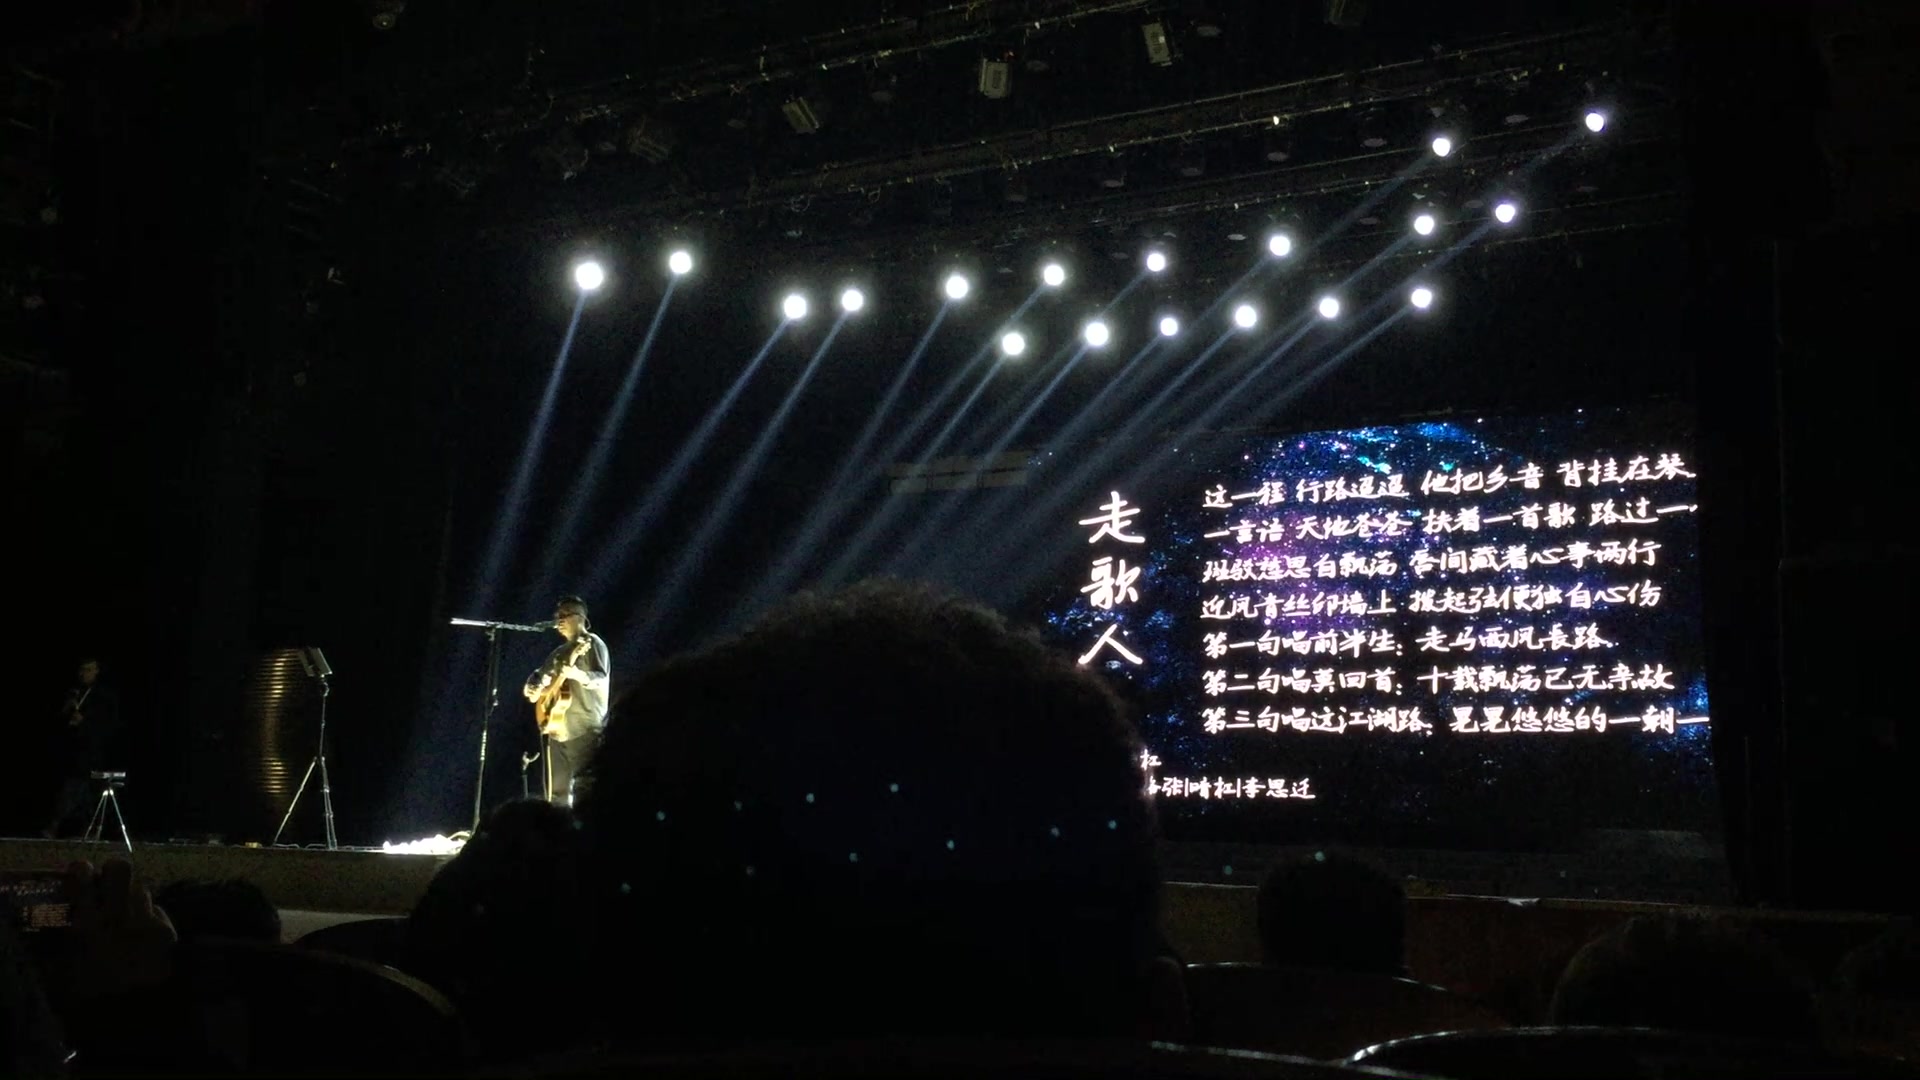 《走歌人》现场版,2017暗杠巡演广州站,激情四射